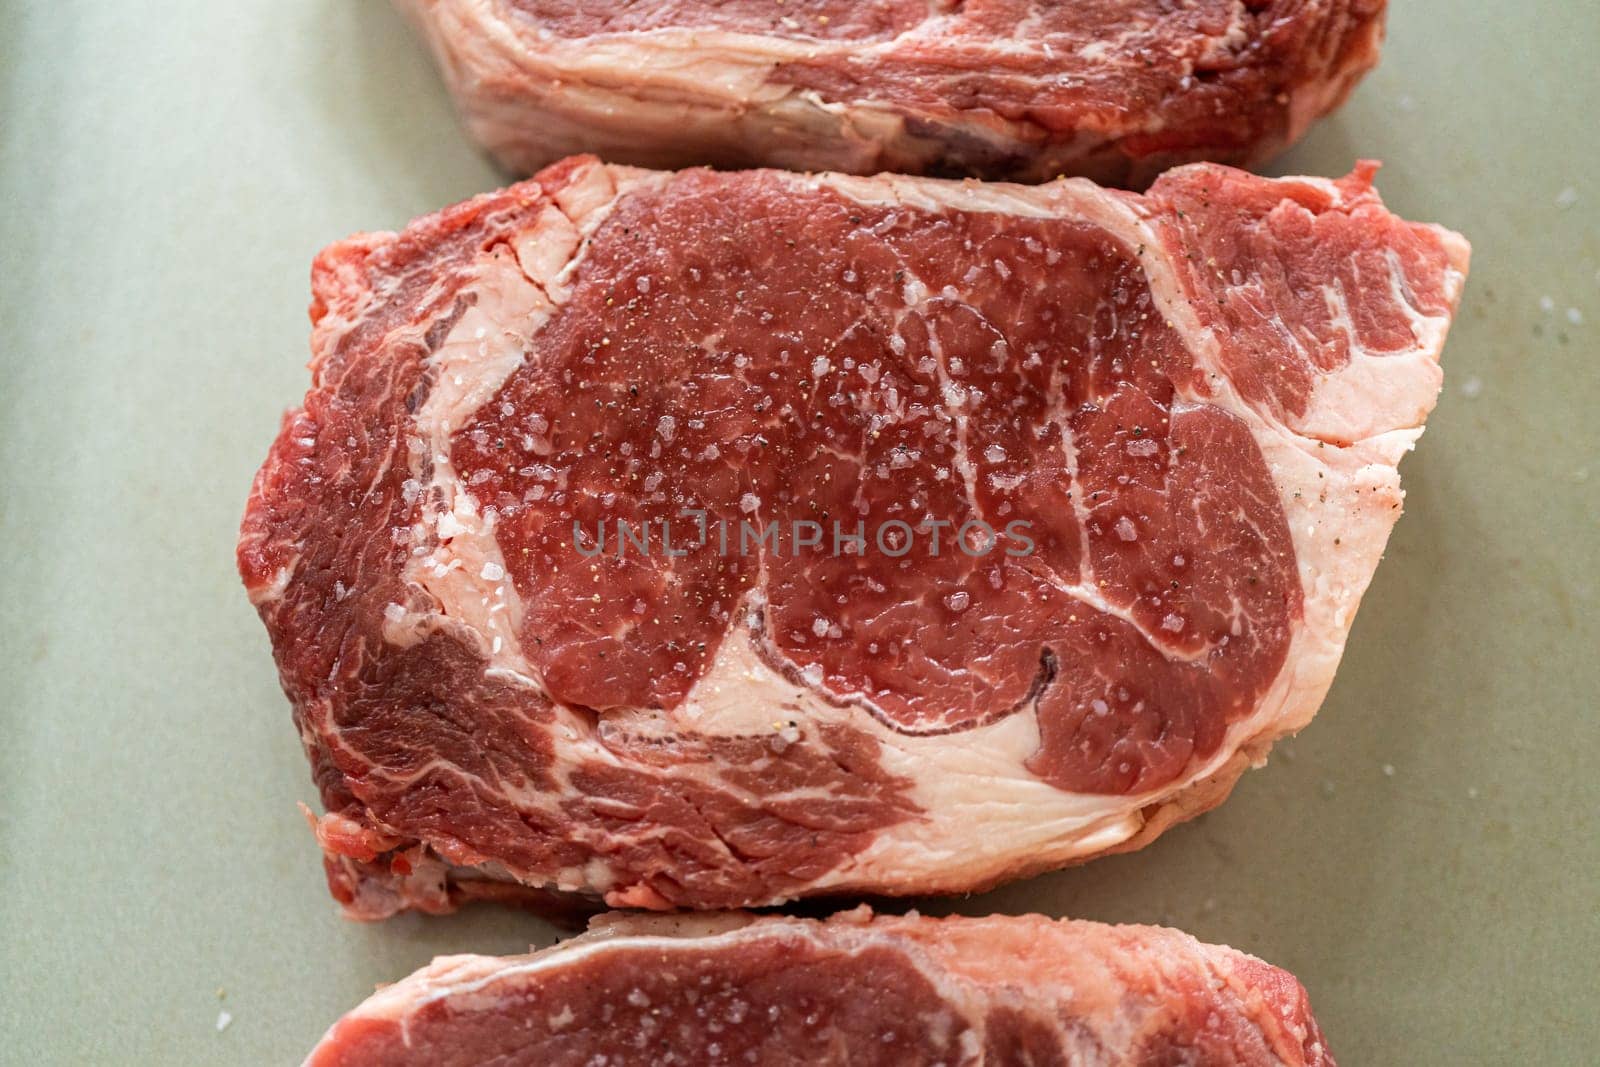 Seasoned Rib Eye Steak Ready for Grilling by arinahabich